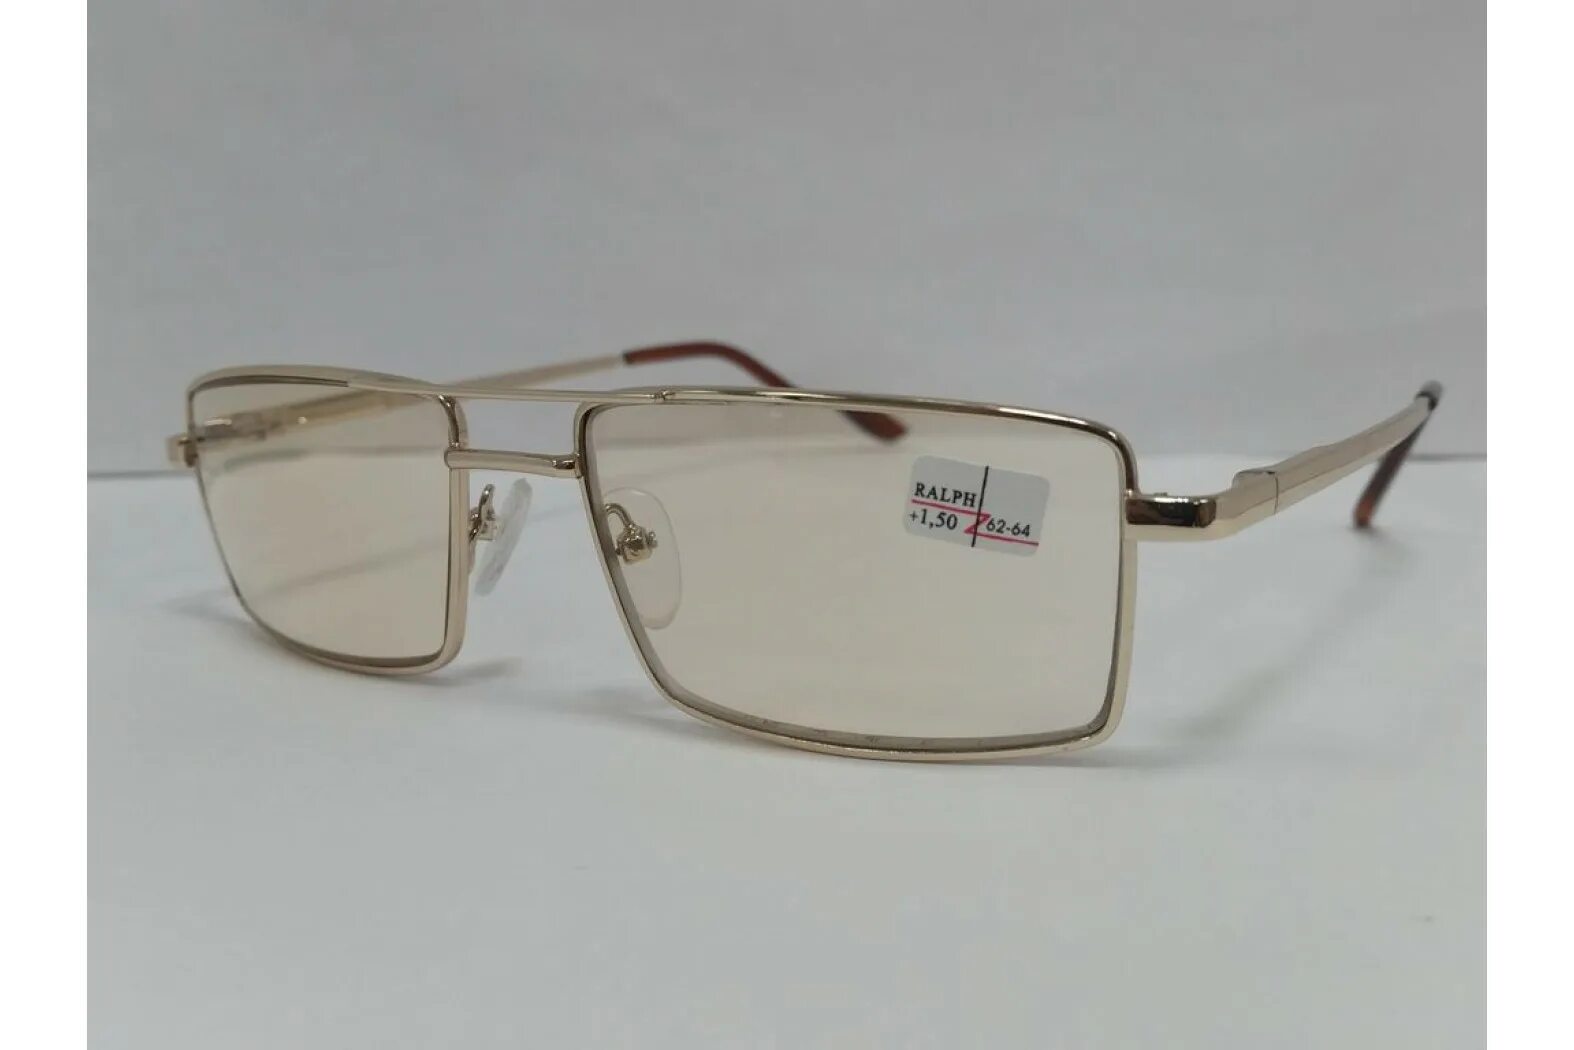 Очки Ральф для зрения тонированные. Очки хамелеоны фотохромные очки. Zen очки хамелеон 1900 h. Очки хамельны стекло 62-64мм.